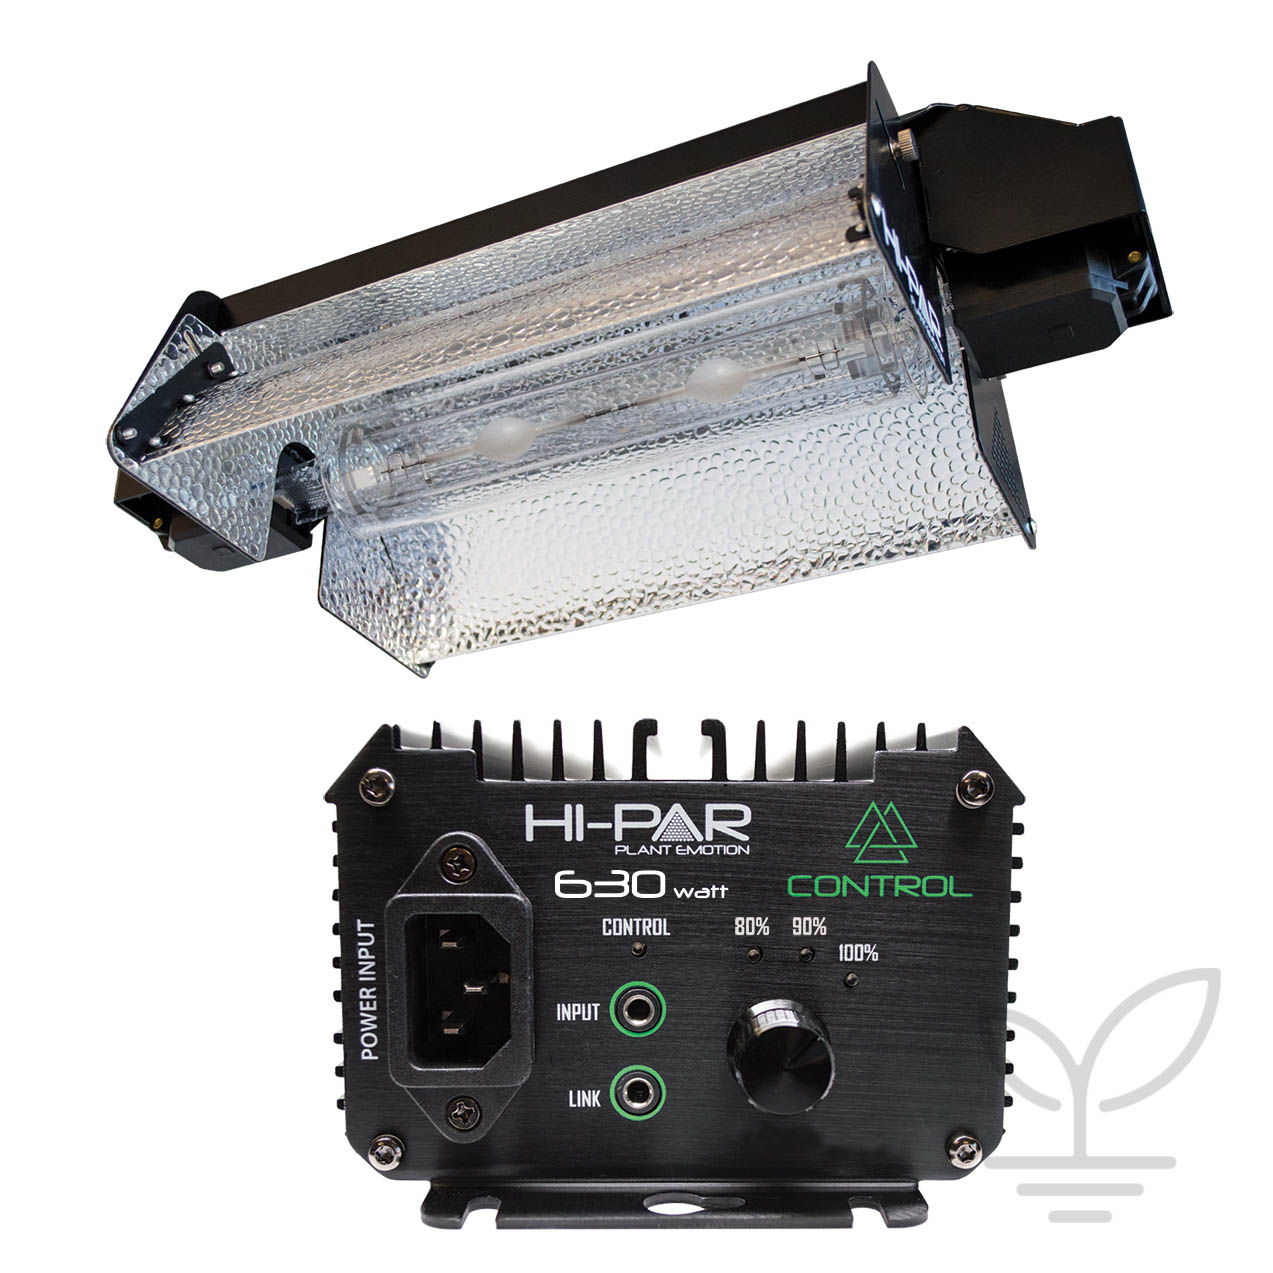 HI-PAR 630w Dynamic DE CMH Control Kit (Ballast, Reflectors And Bulb)